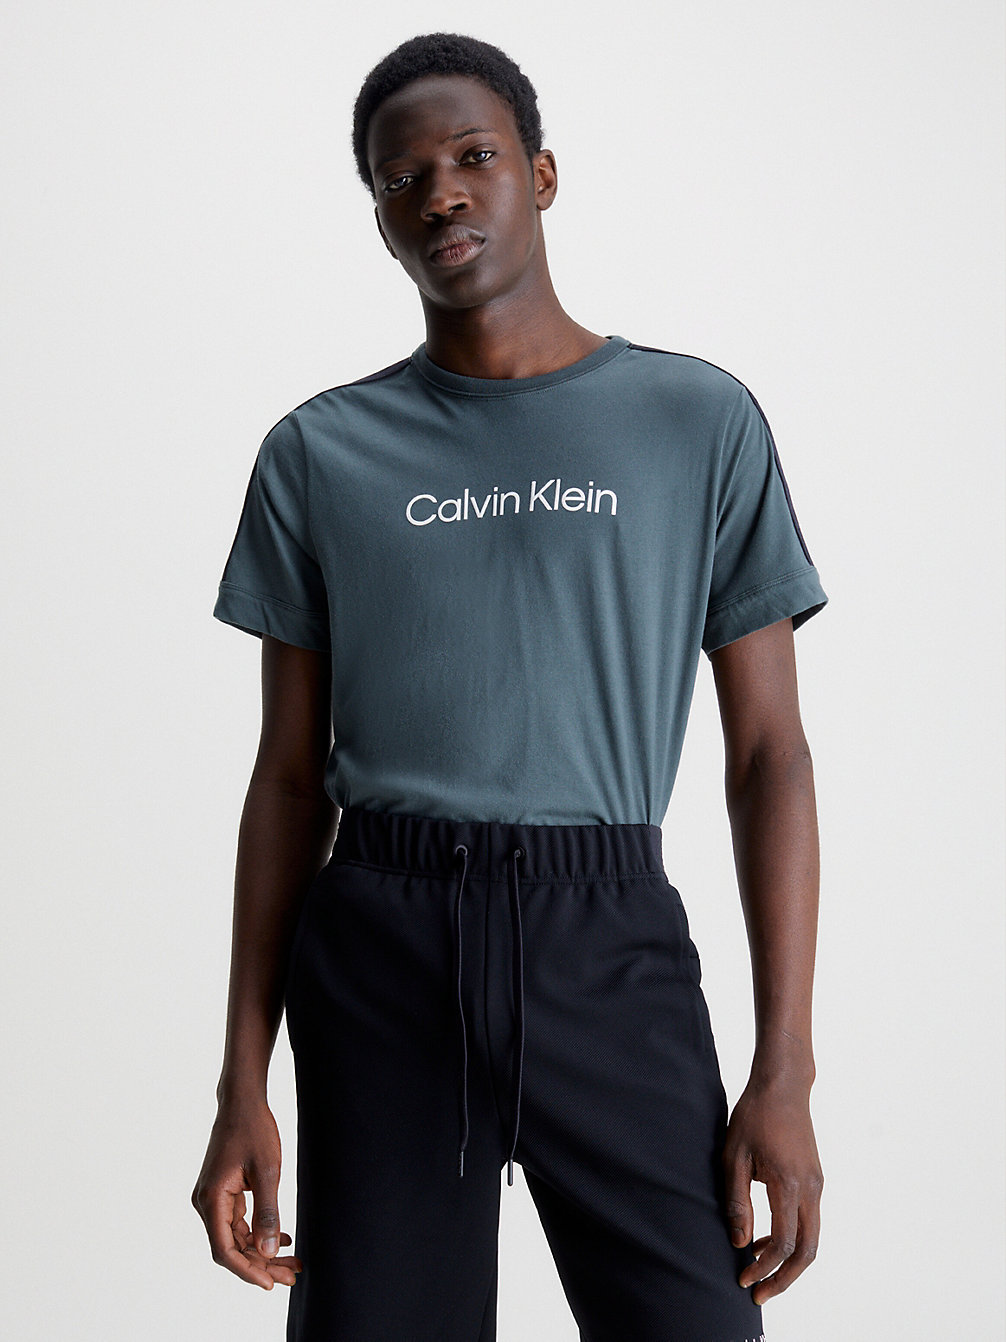 URBAN CHIC > Weiches Gym-T-Shirt > undefined Herren - Calvin Klein